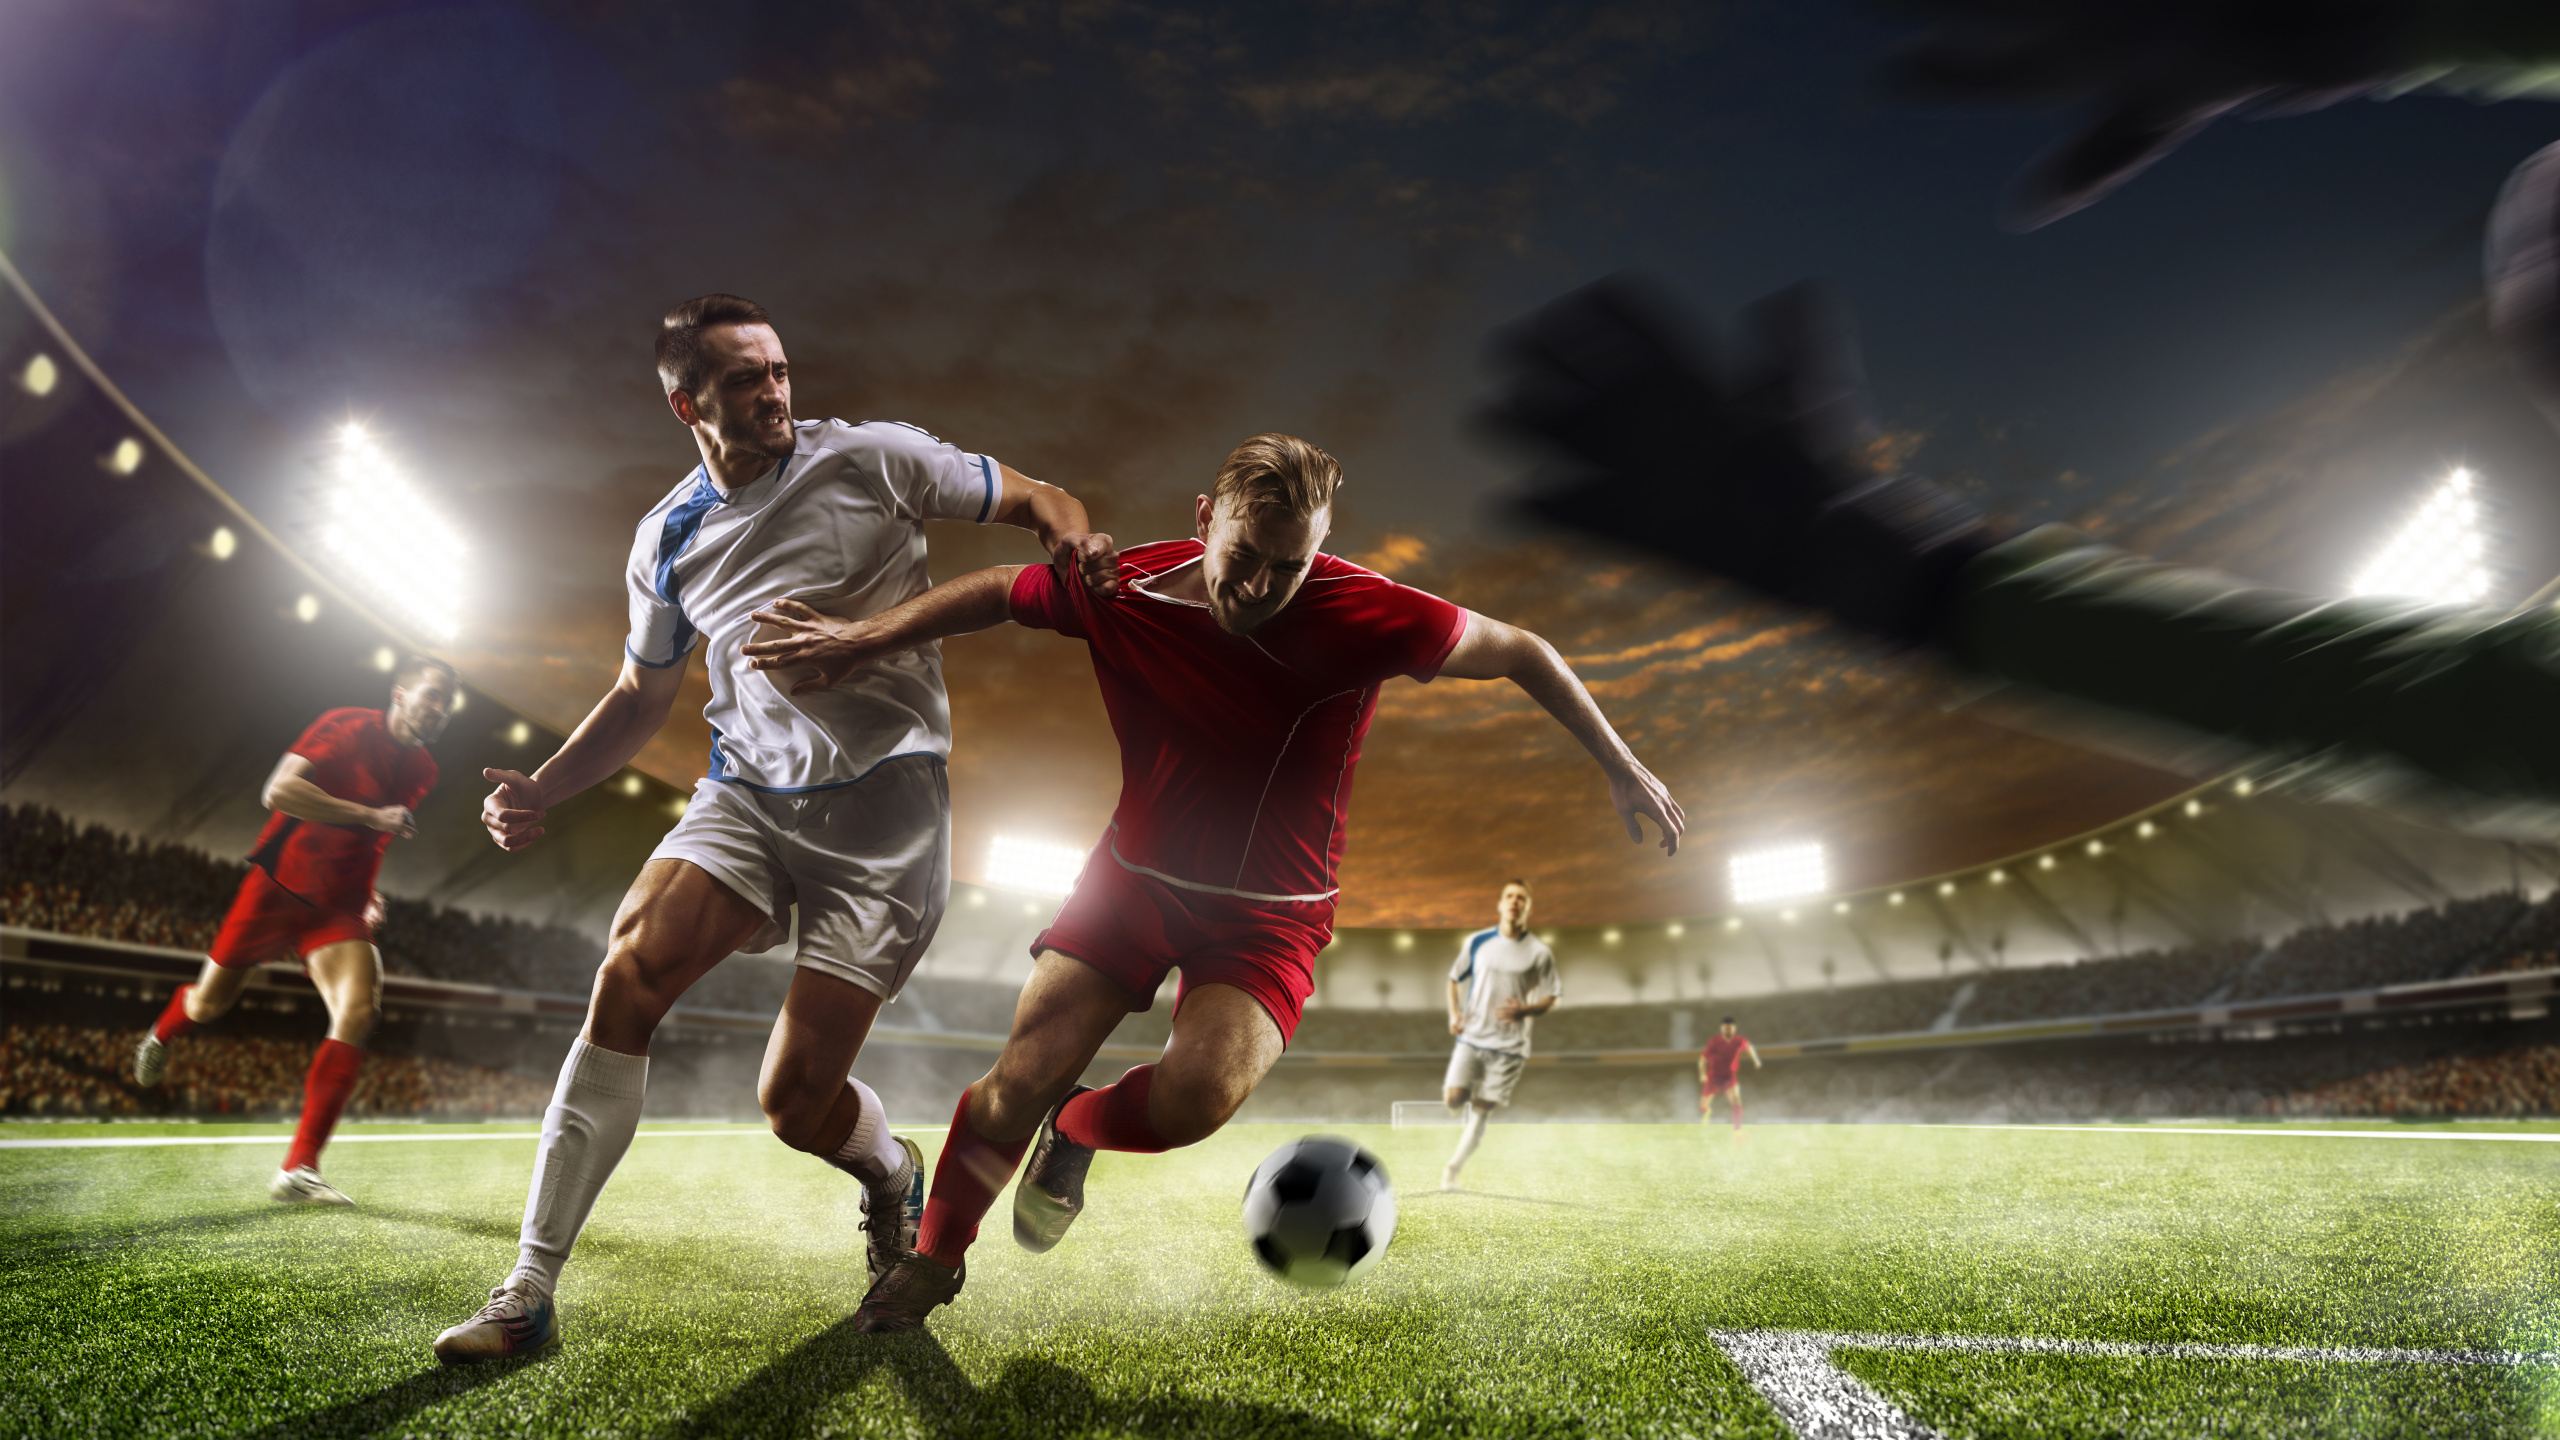 2 Männer Spielen Nachts Fußball Auf Grünem Rasen. Wallpaper in 2560x1440 Resolution